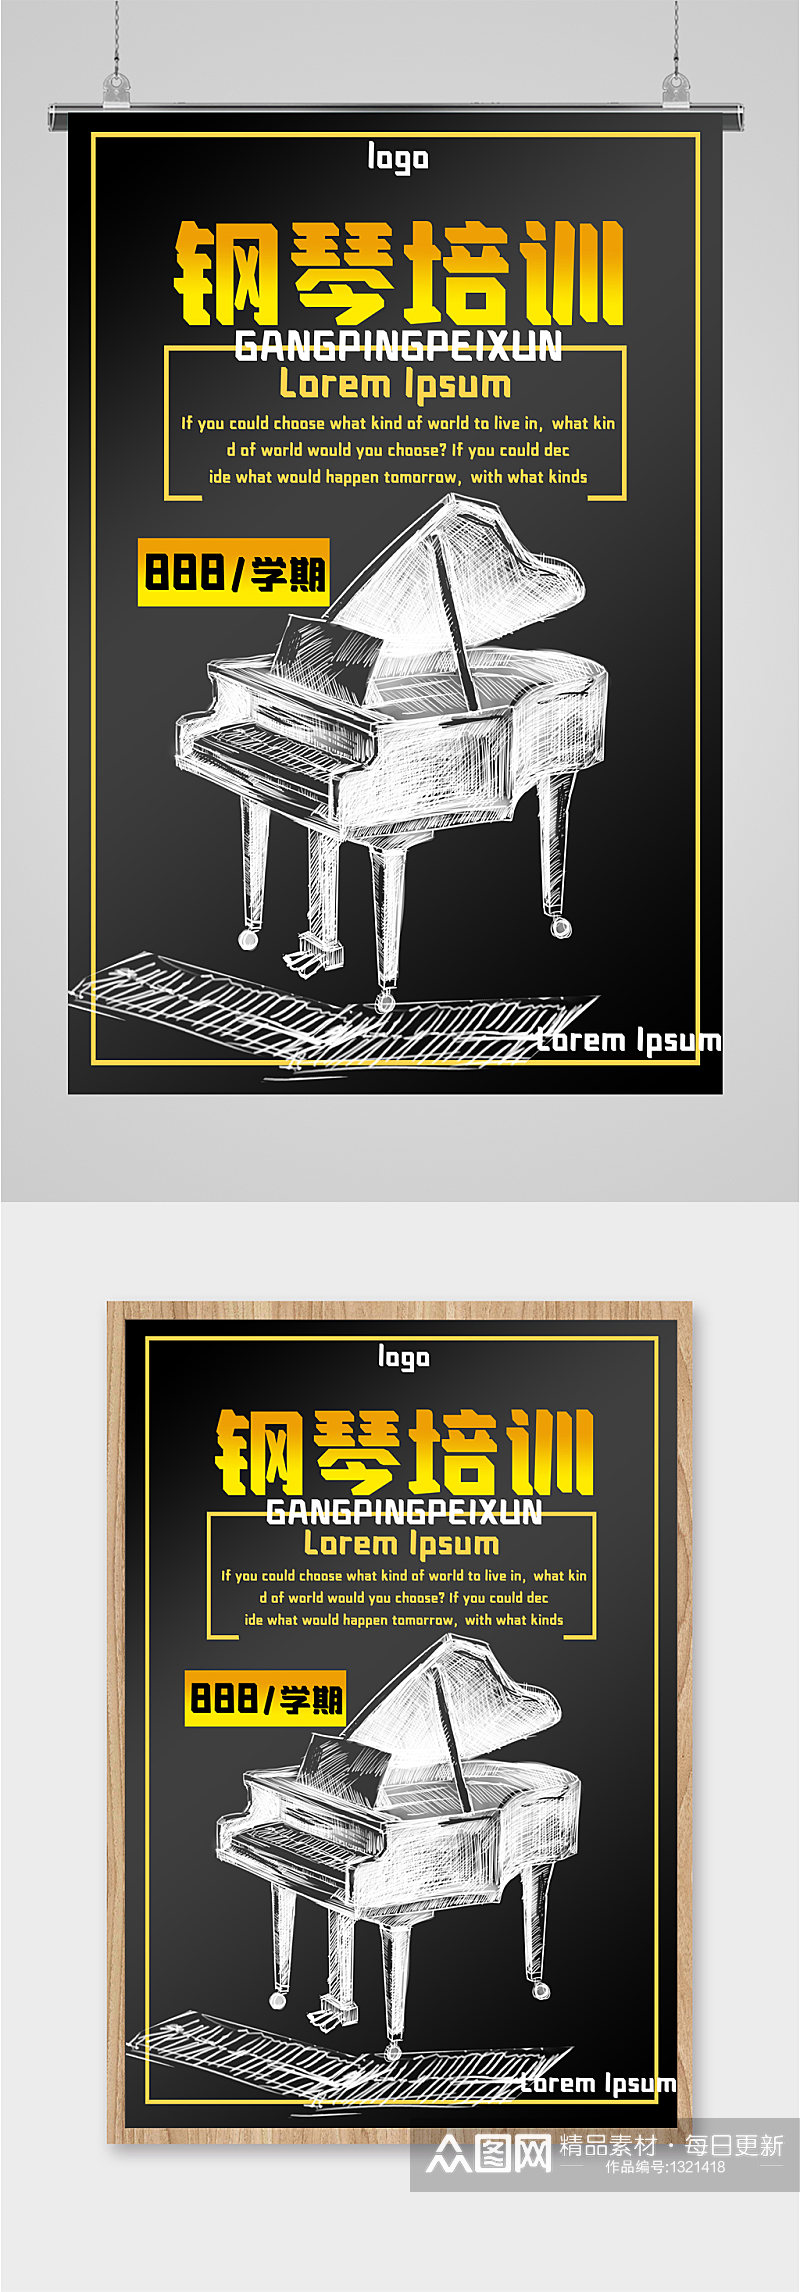 钢琴培训班招生宣传海报素材